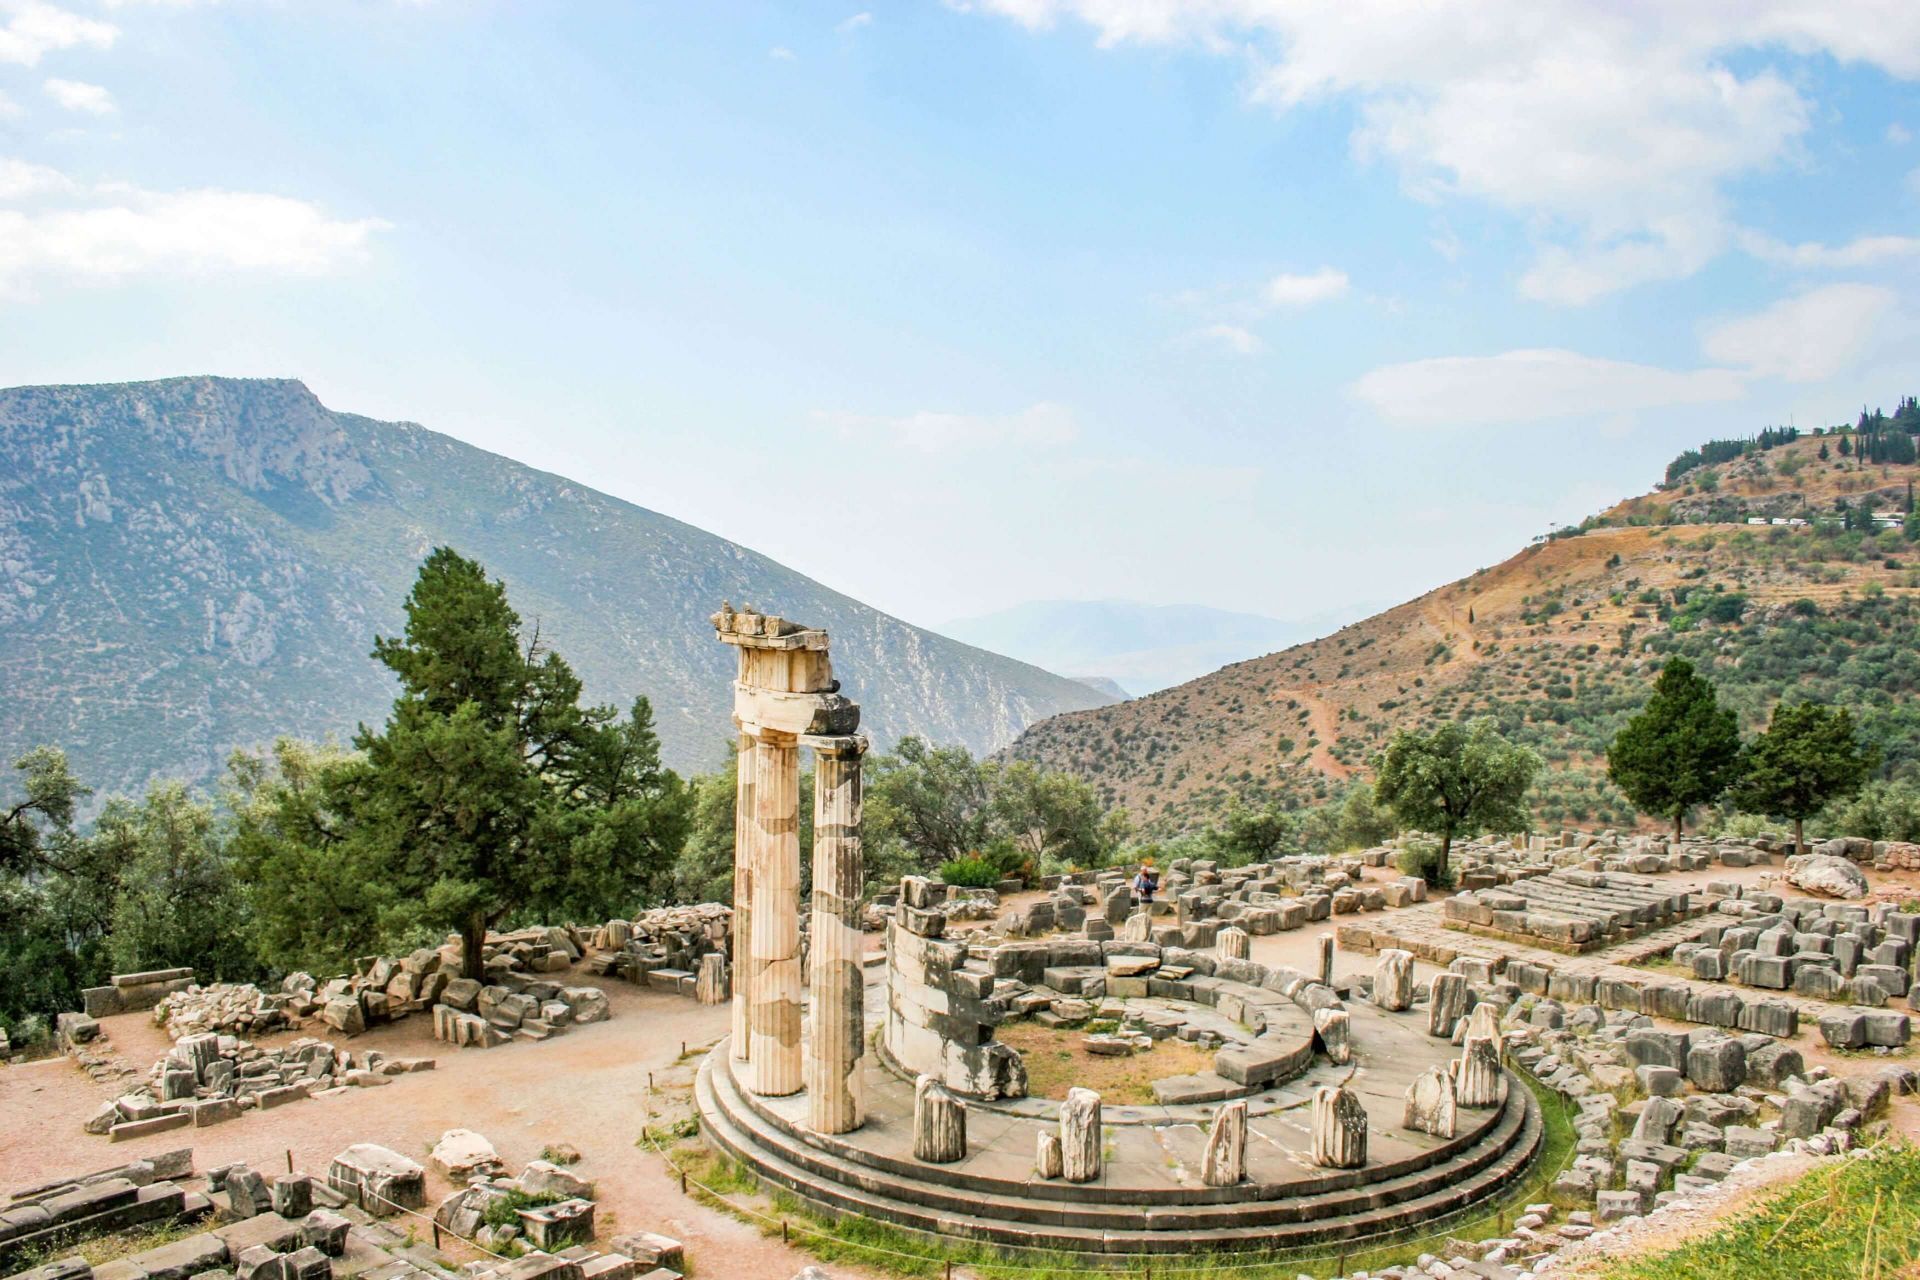 Delphi, the most famous ancient Greek site